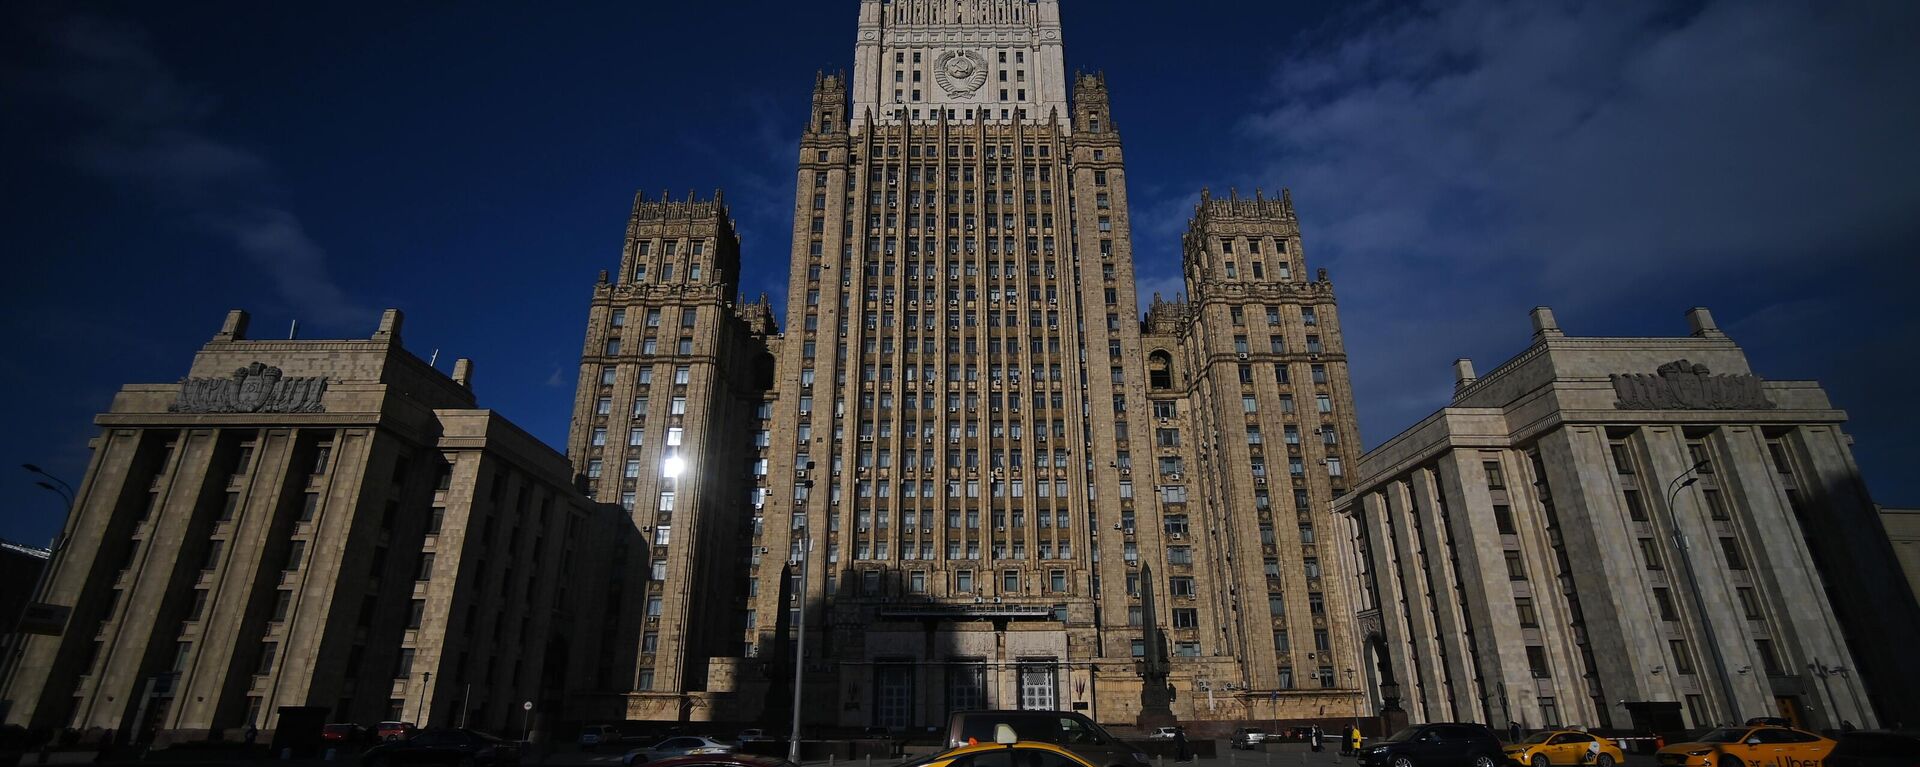 Rusya Federasyonu Dışişleri Bakanlığı'nın Moskova'daki binası. - Sputnik Türkiye, 1920, 18.05.2022